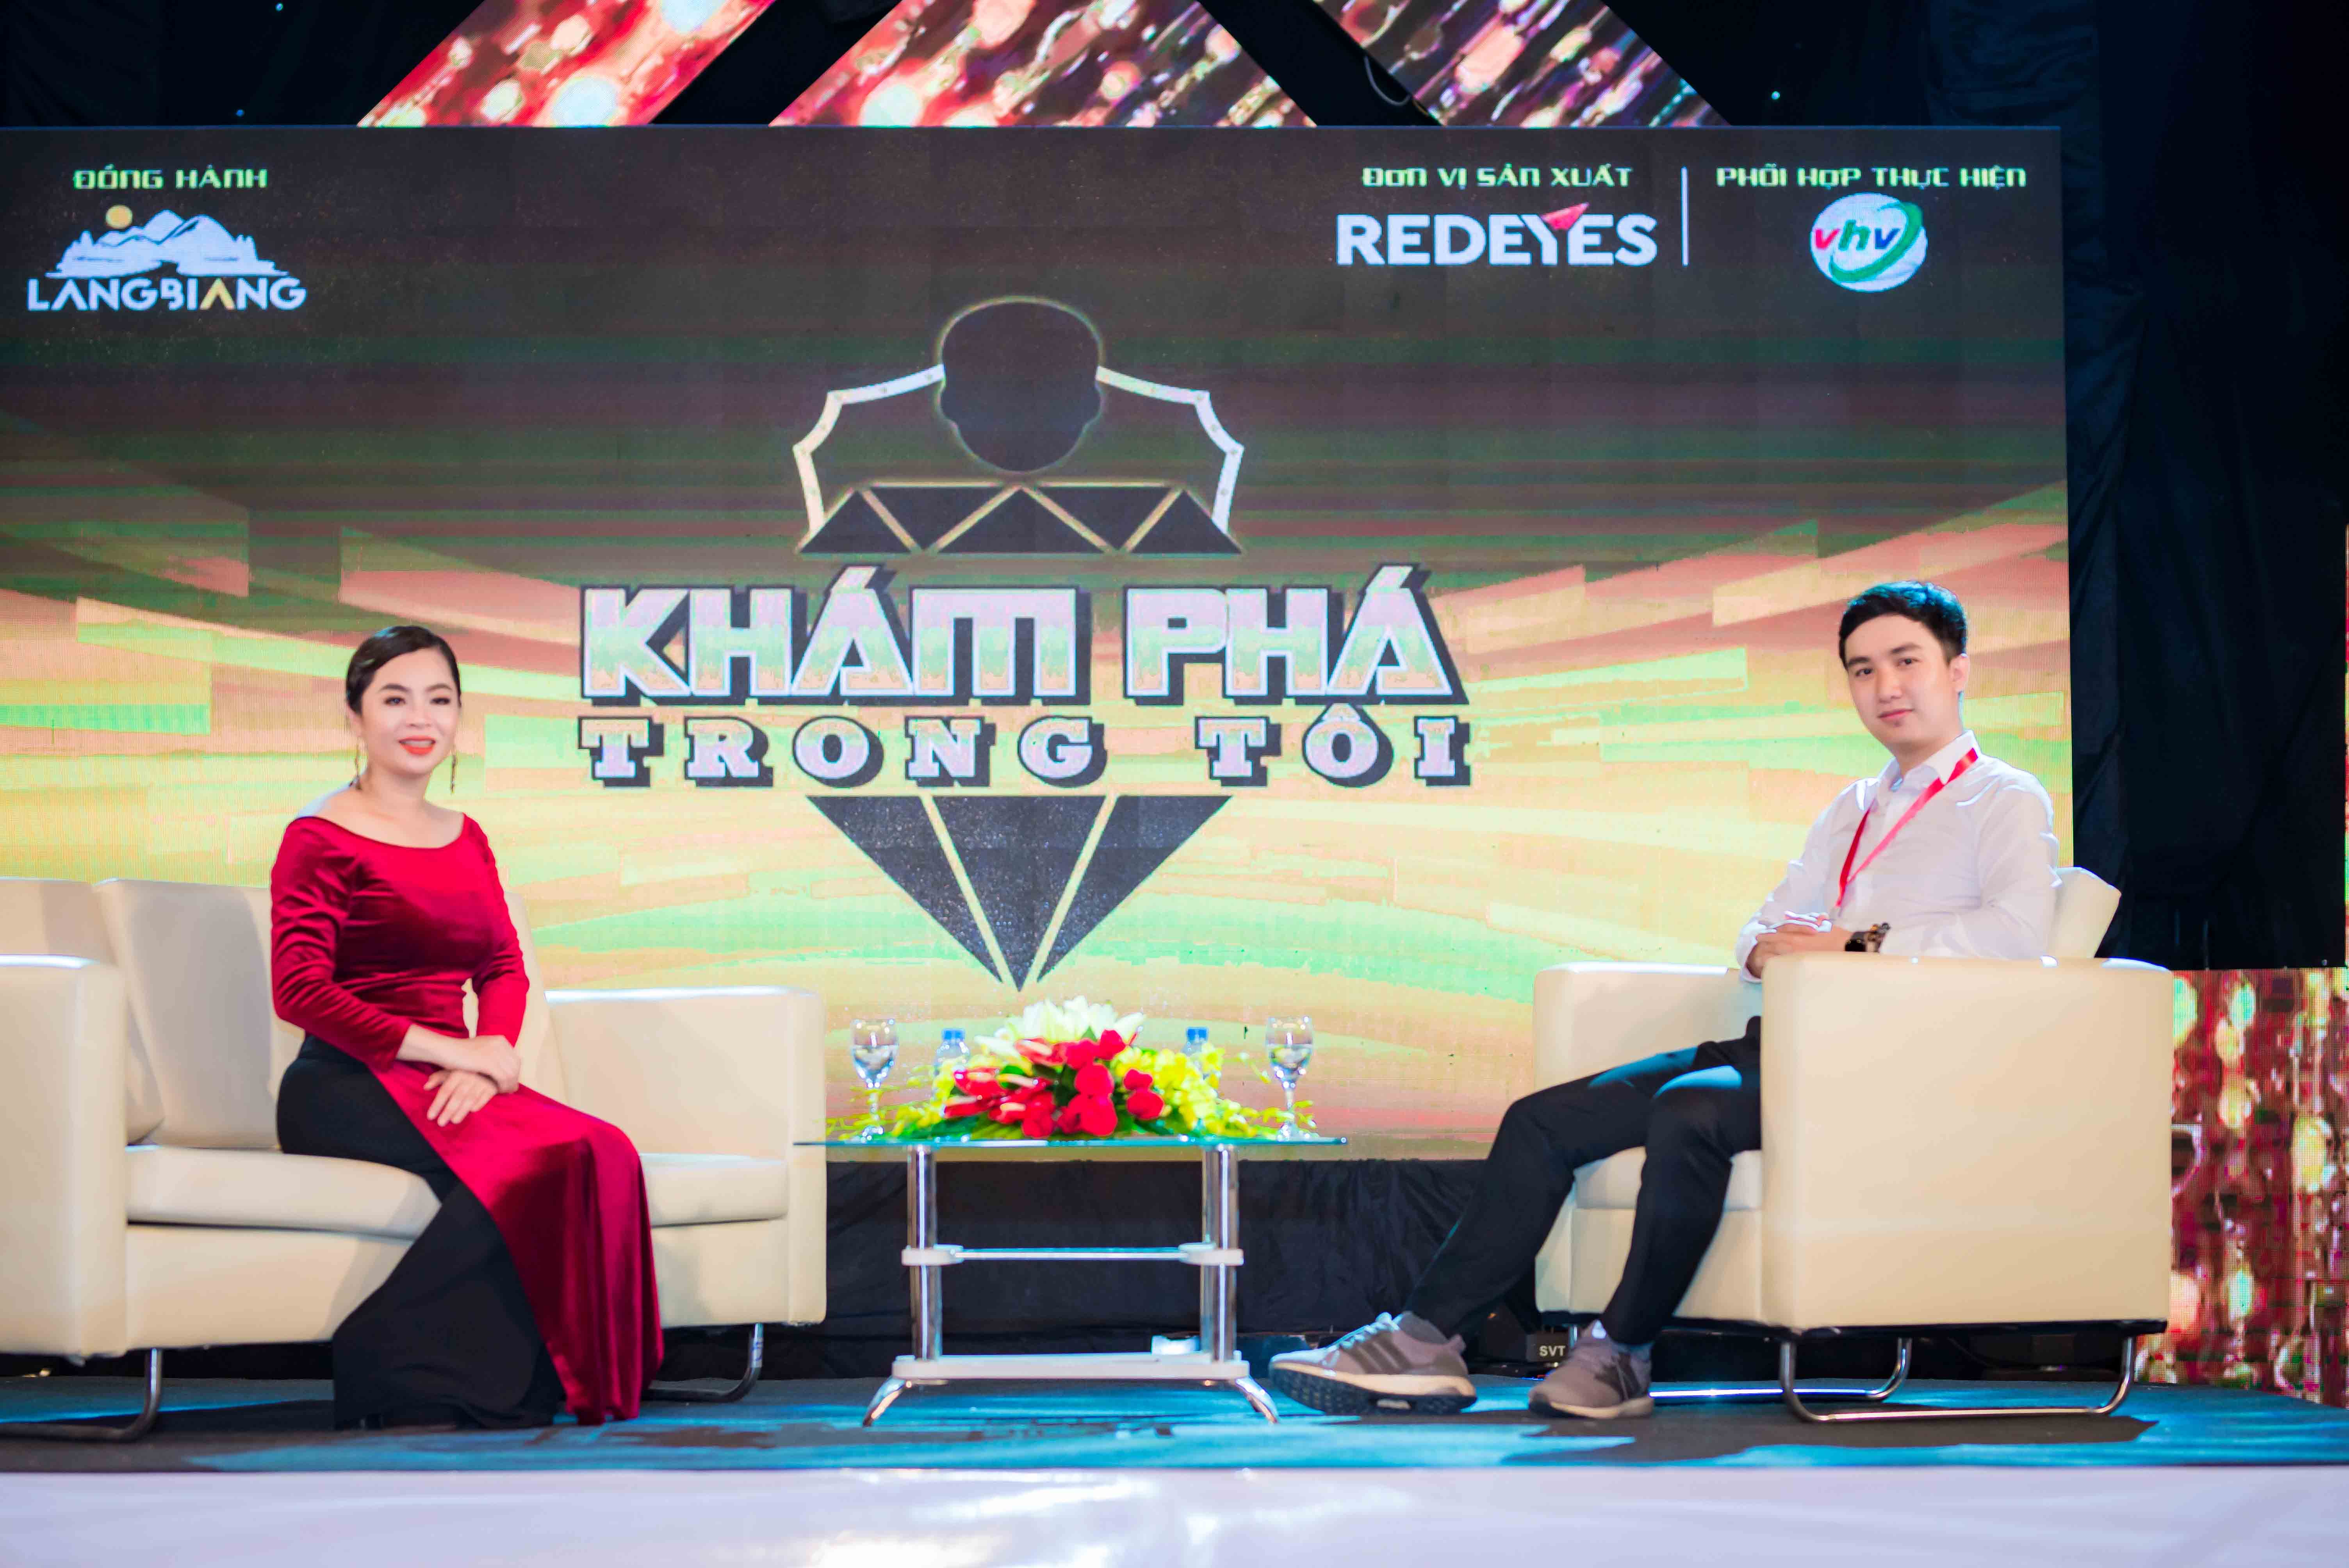 Tập 1 Talkshow “Khám phá trong Tôi”: Chuyện bí mật giờ mới kể của CEO Thái Thu Đào